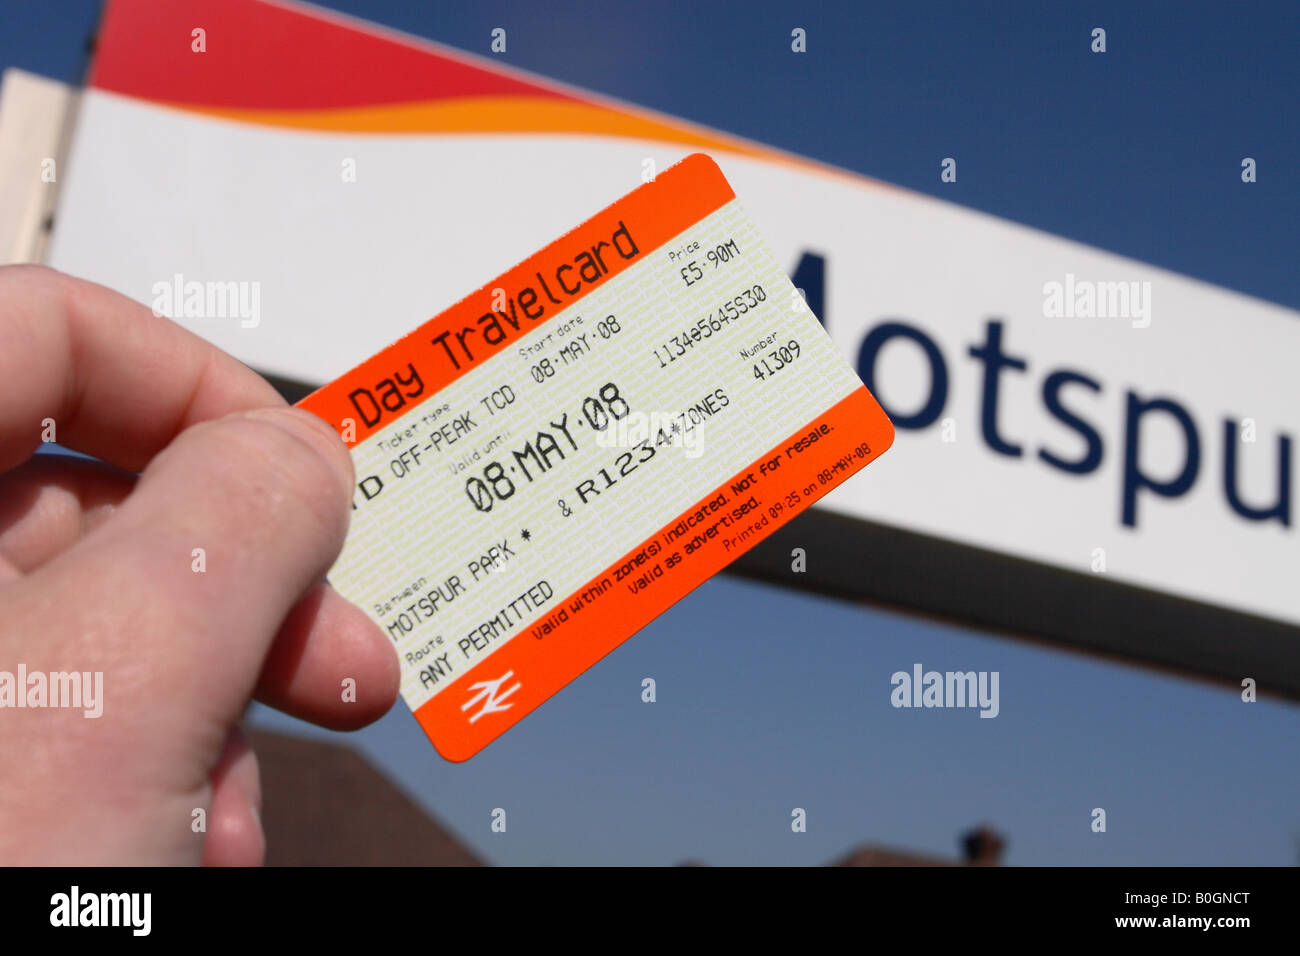 Un jour Londres Tarif ticket offrant le transport public de bus et métro  rail Londons système de réseau de transport Photo Stock - Alamy